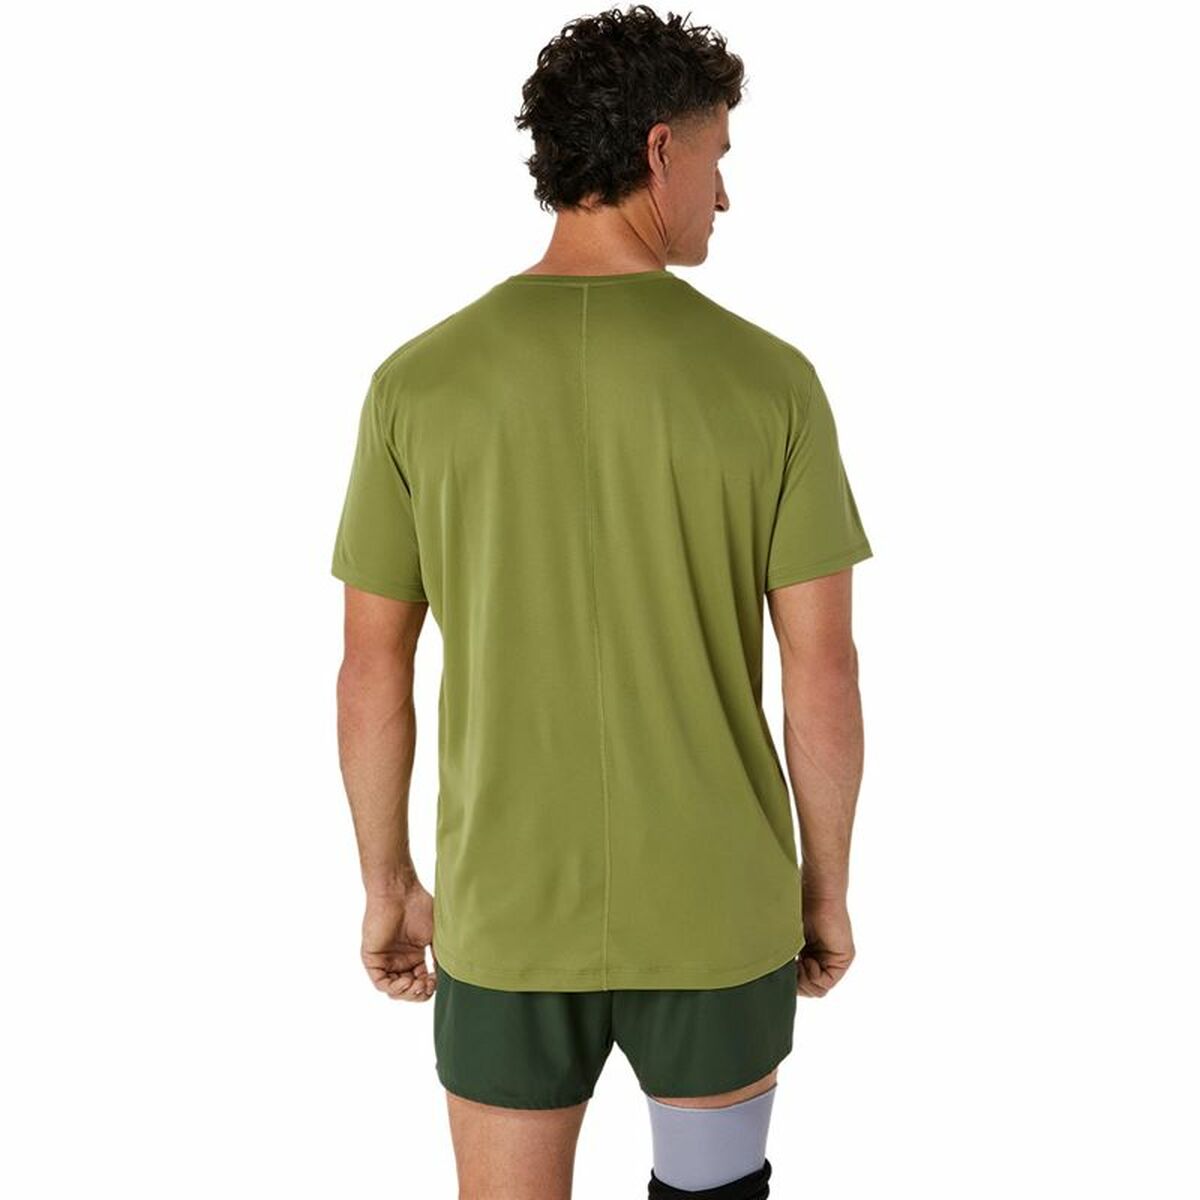 T-shirt à manches courtes homme Asics Core Top  Vert militaire